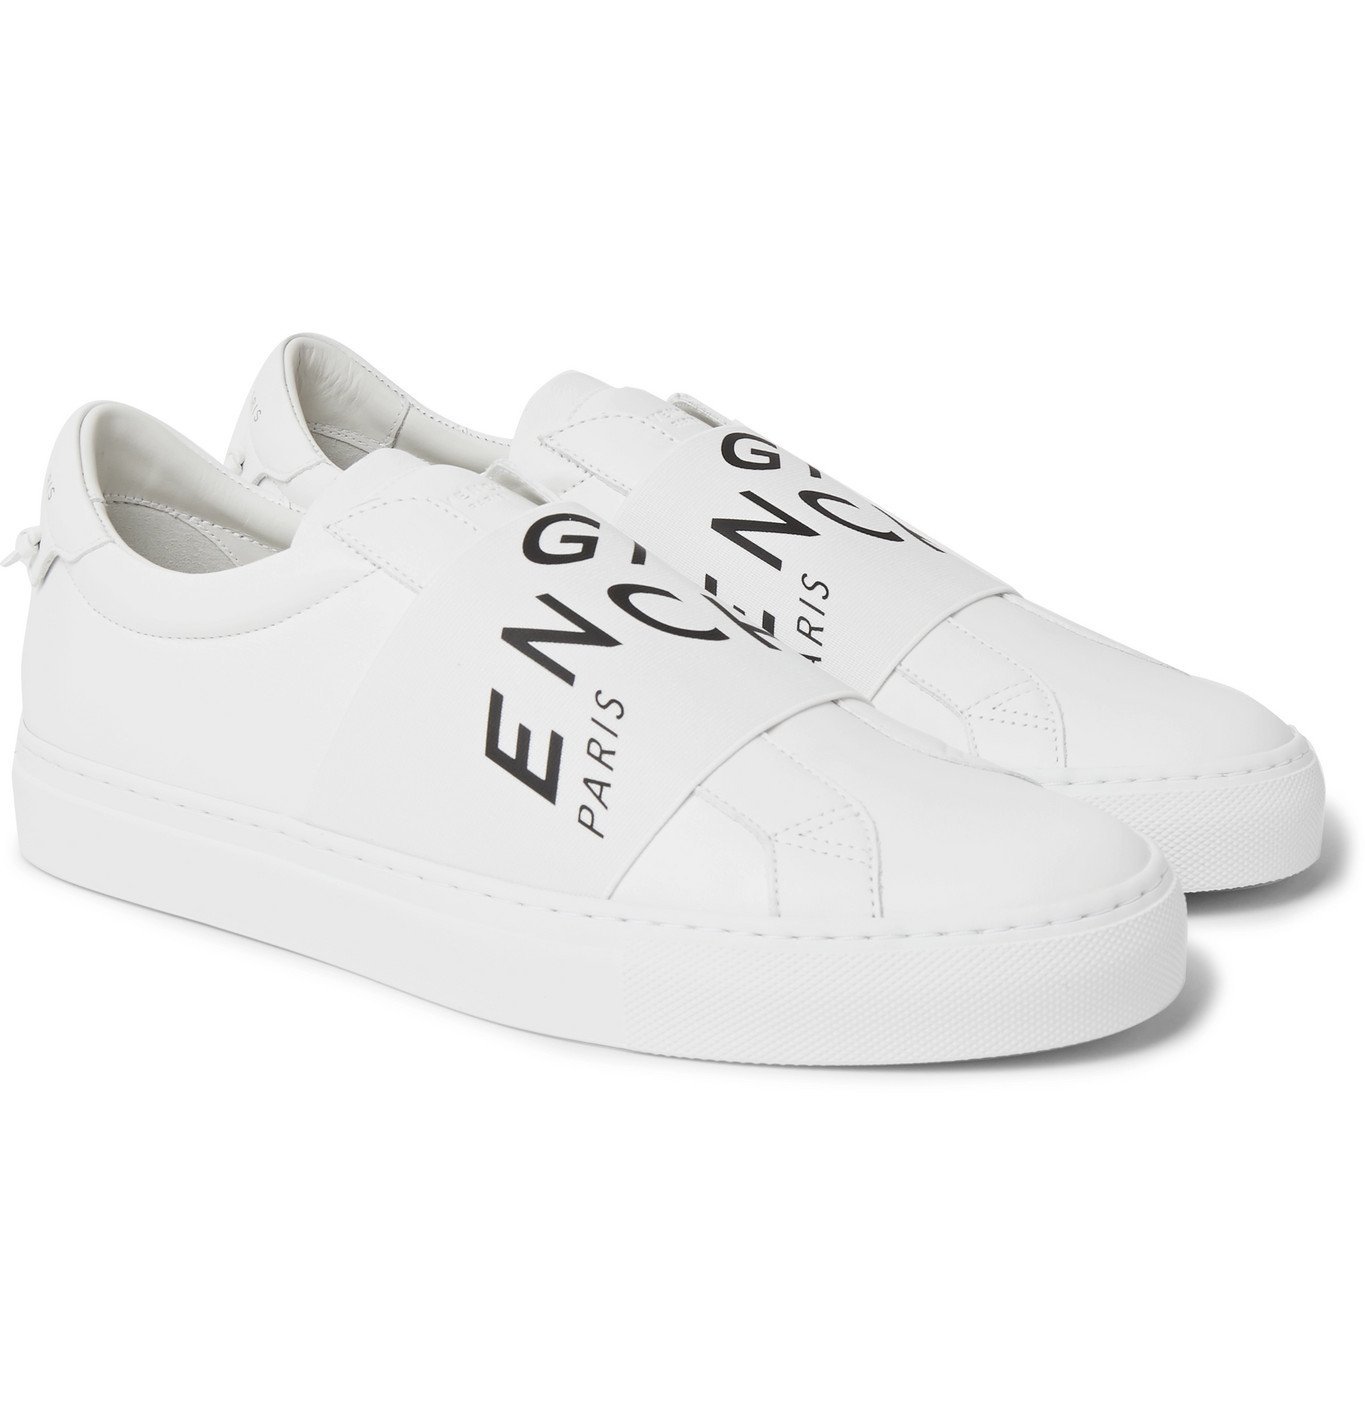 Givenchy - Urban Street Logo-Print Leather Slip-On Sneakers - White ...